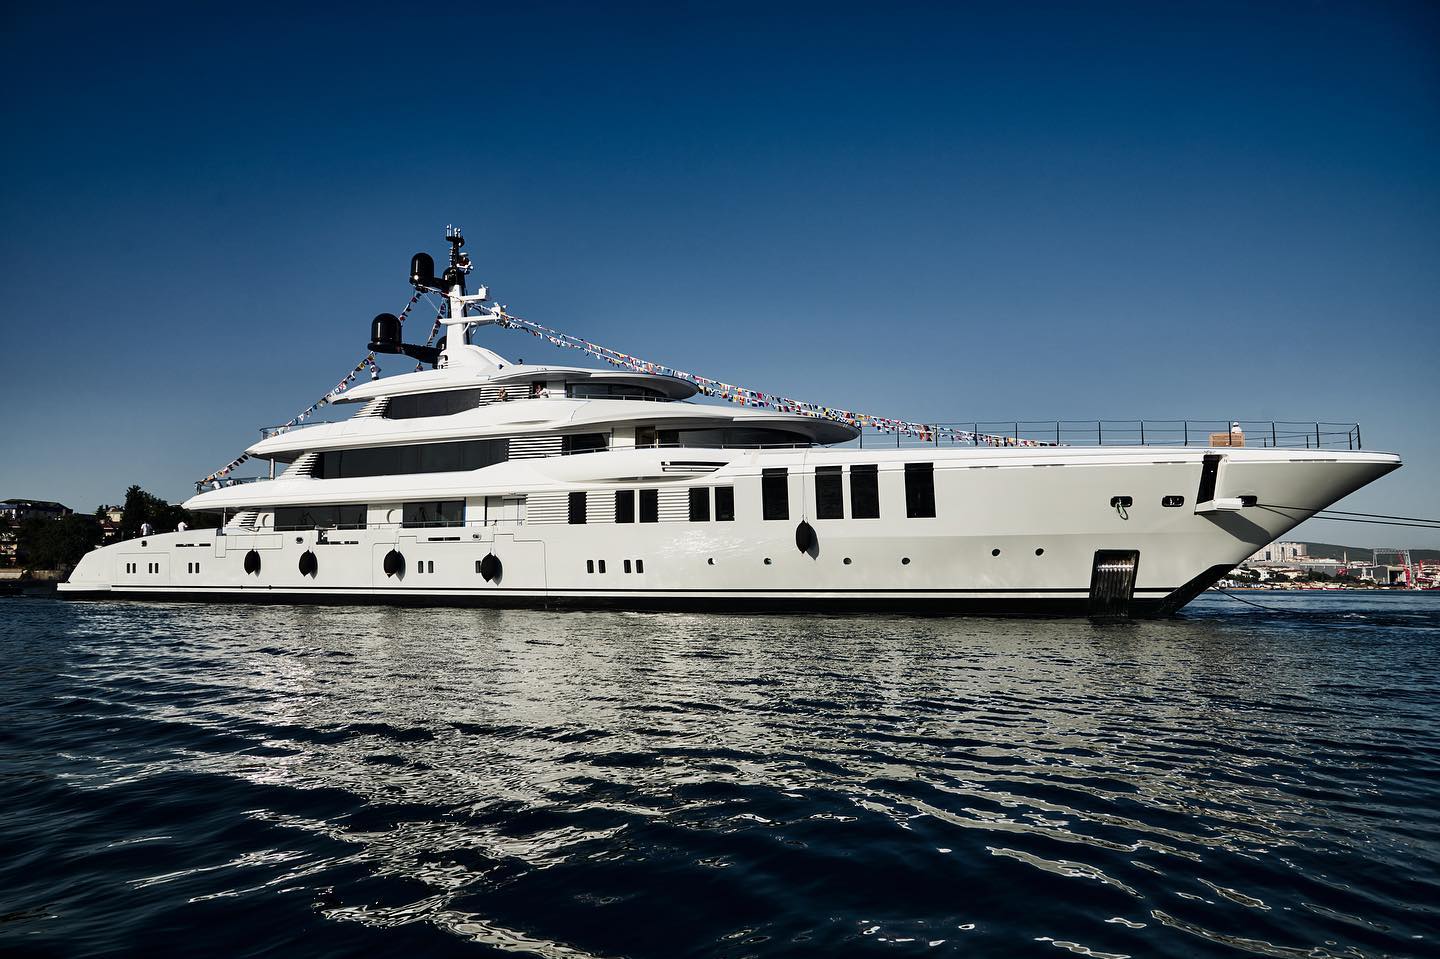 ROE Yacht - Turquoise - 2021 - Propietario multimillonario desconocido